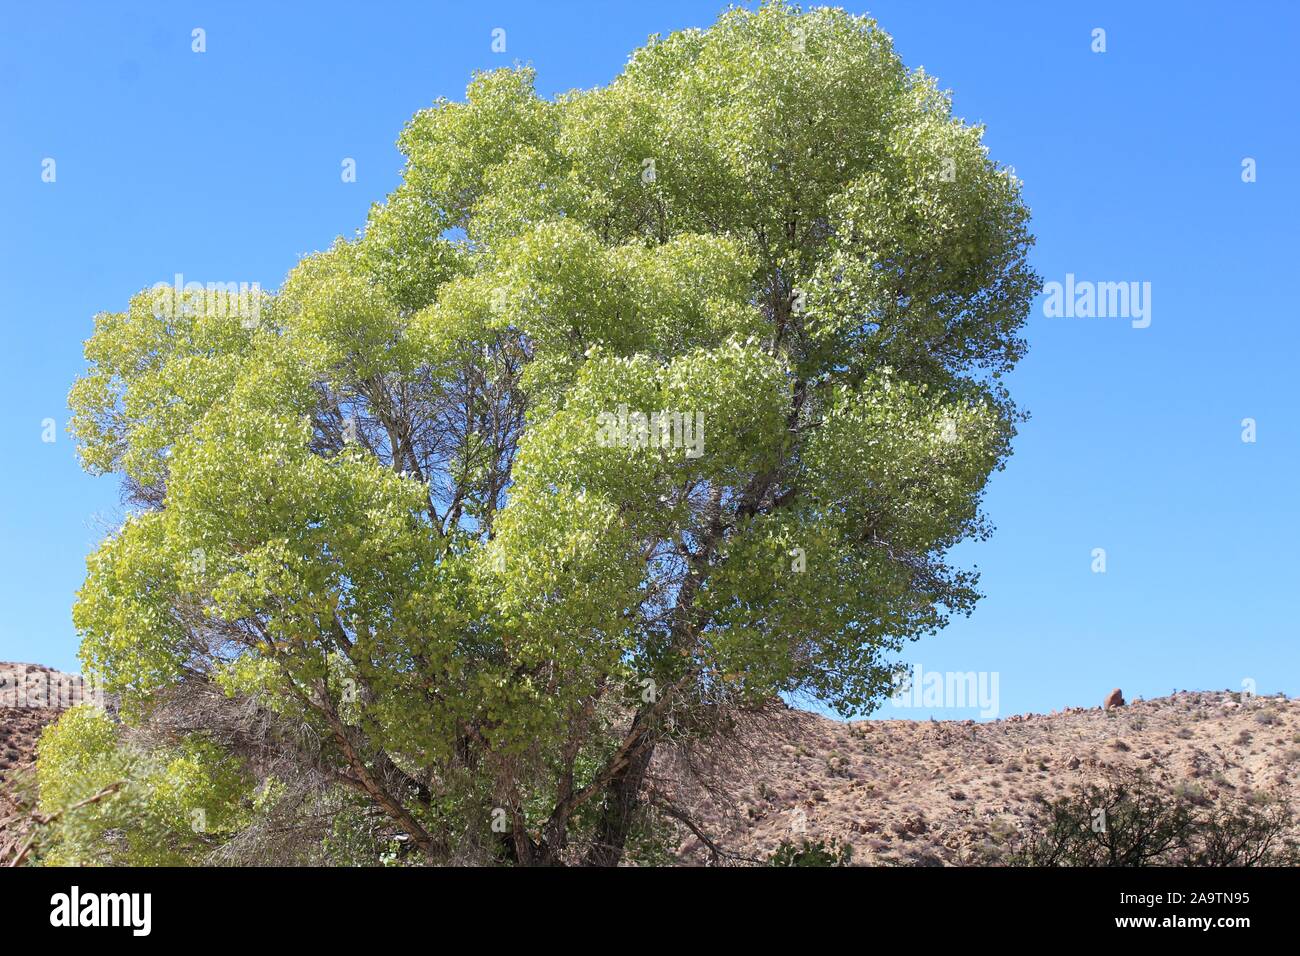 Arbre indigène au printemps Cottonwood de Joshua Tree National Park dans le désert du Colorado, botaniquement Populus fremontii, communément Fremonts peuplier deltoïde. Banque D'Images